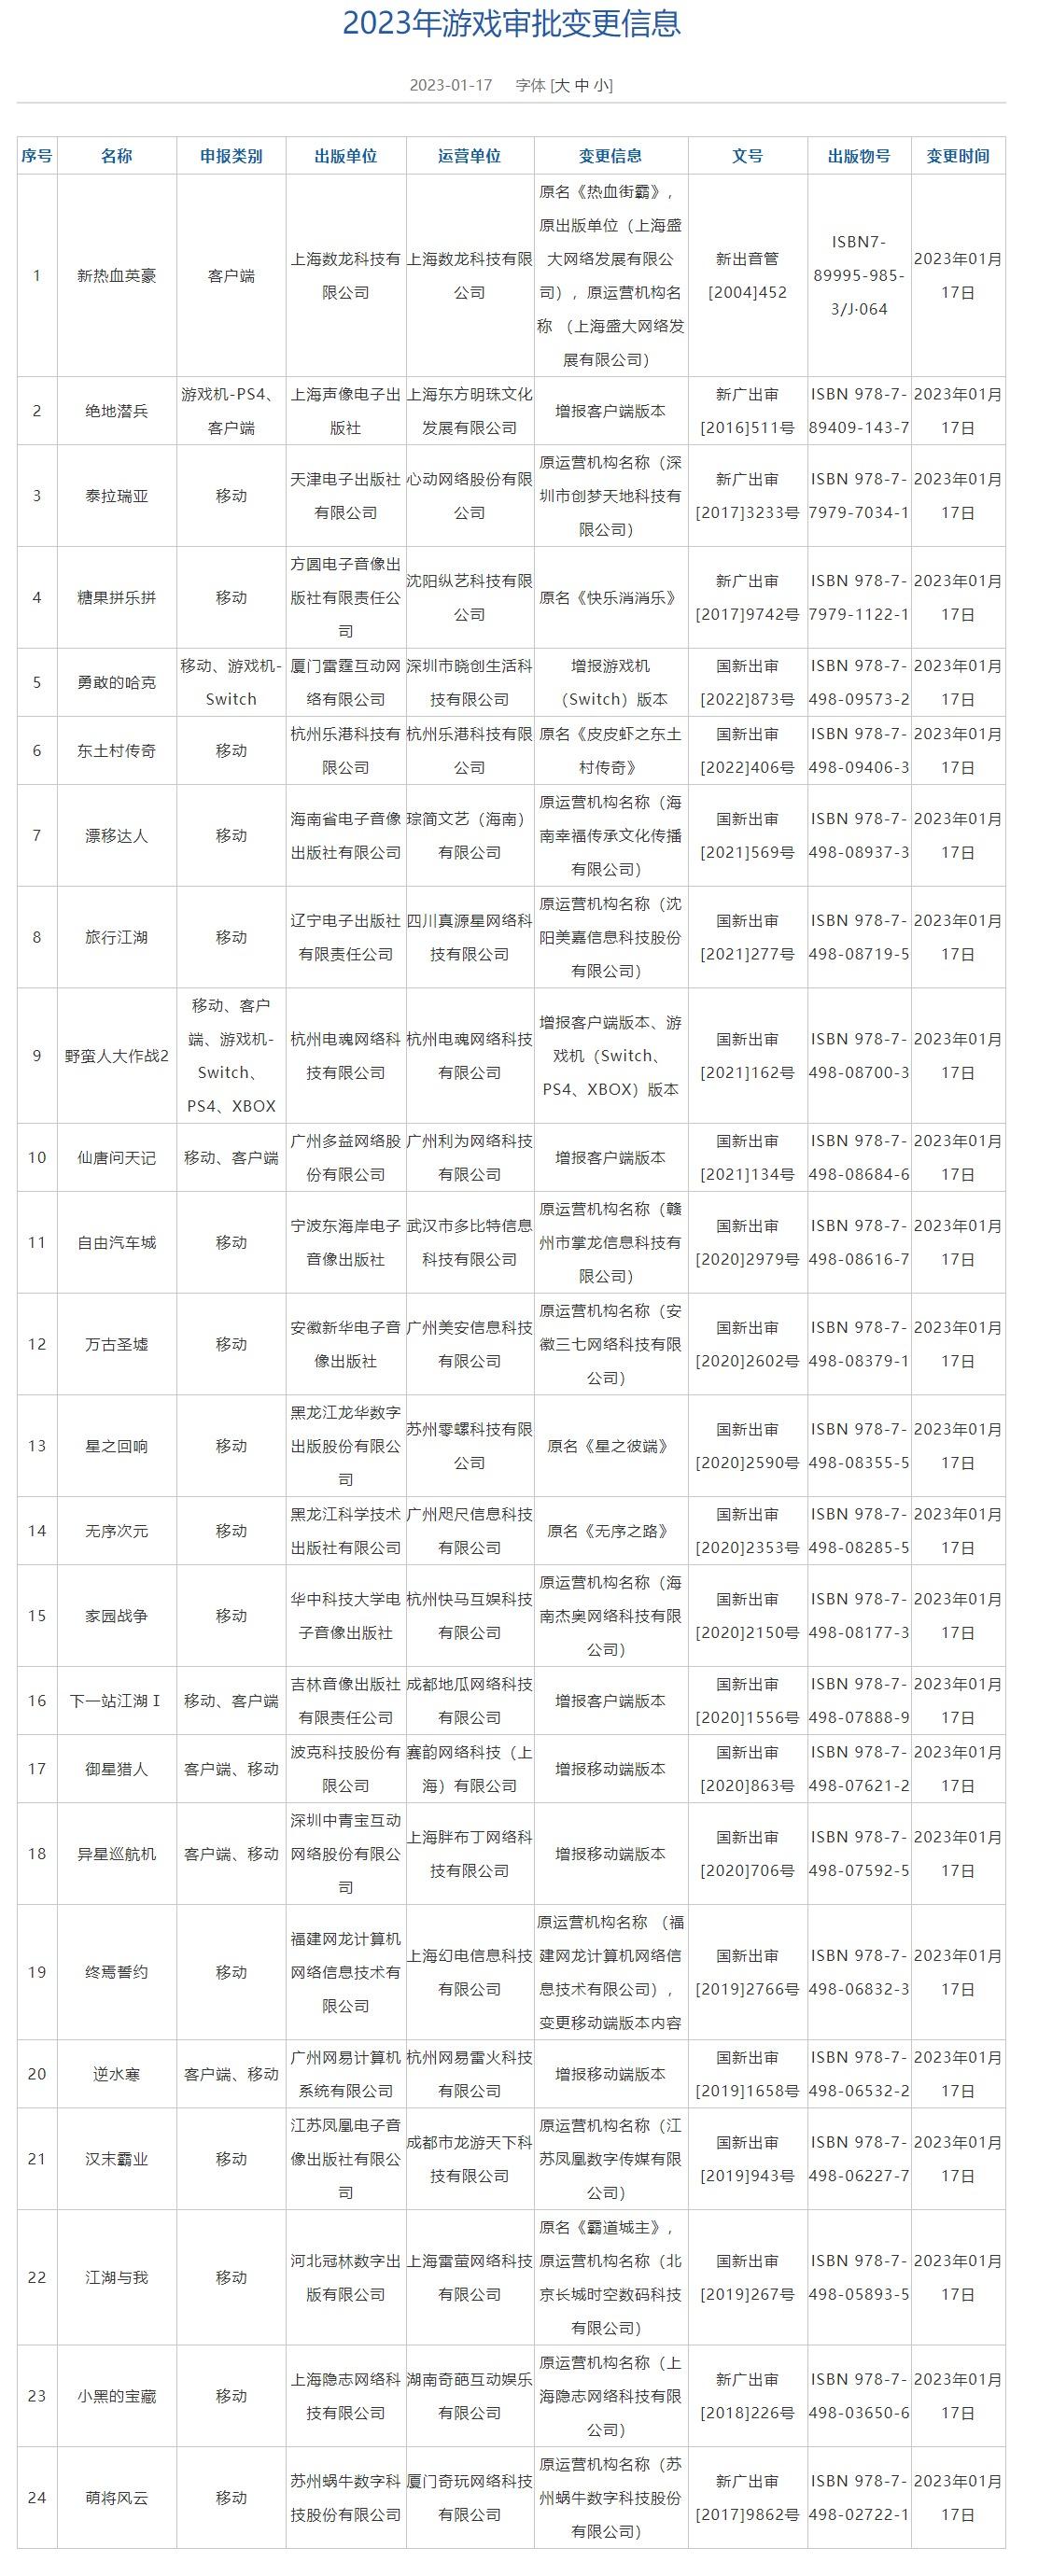 一月中國遊戲版號下發 米哈遊騰訊獲得版號 4%title%